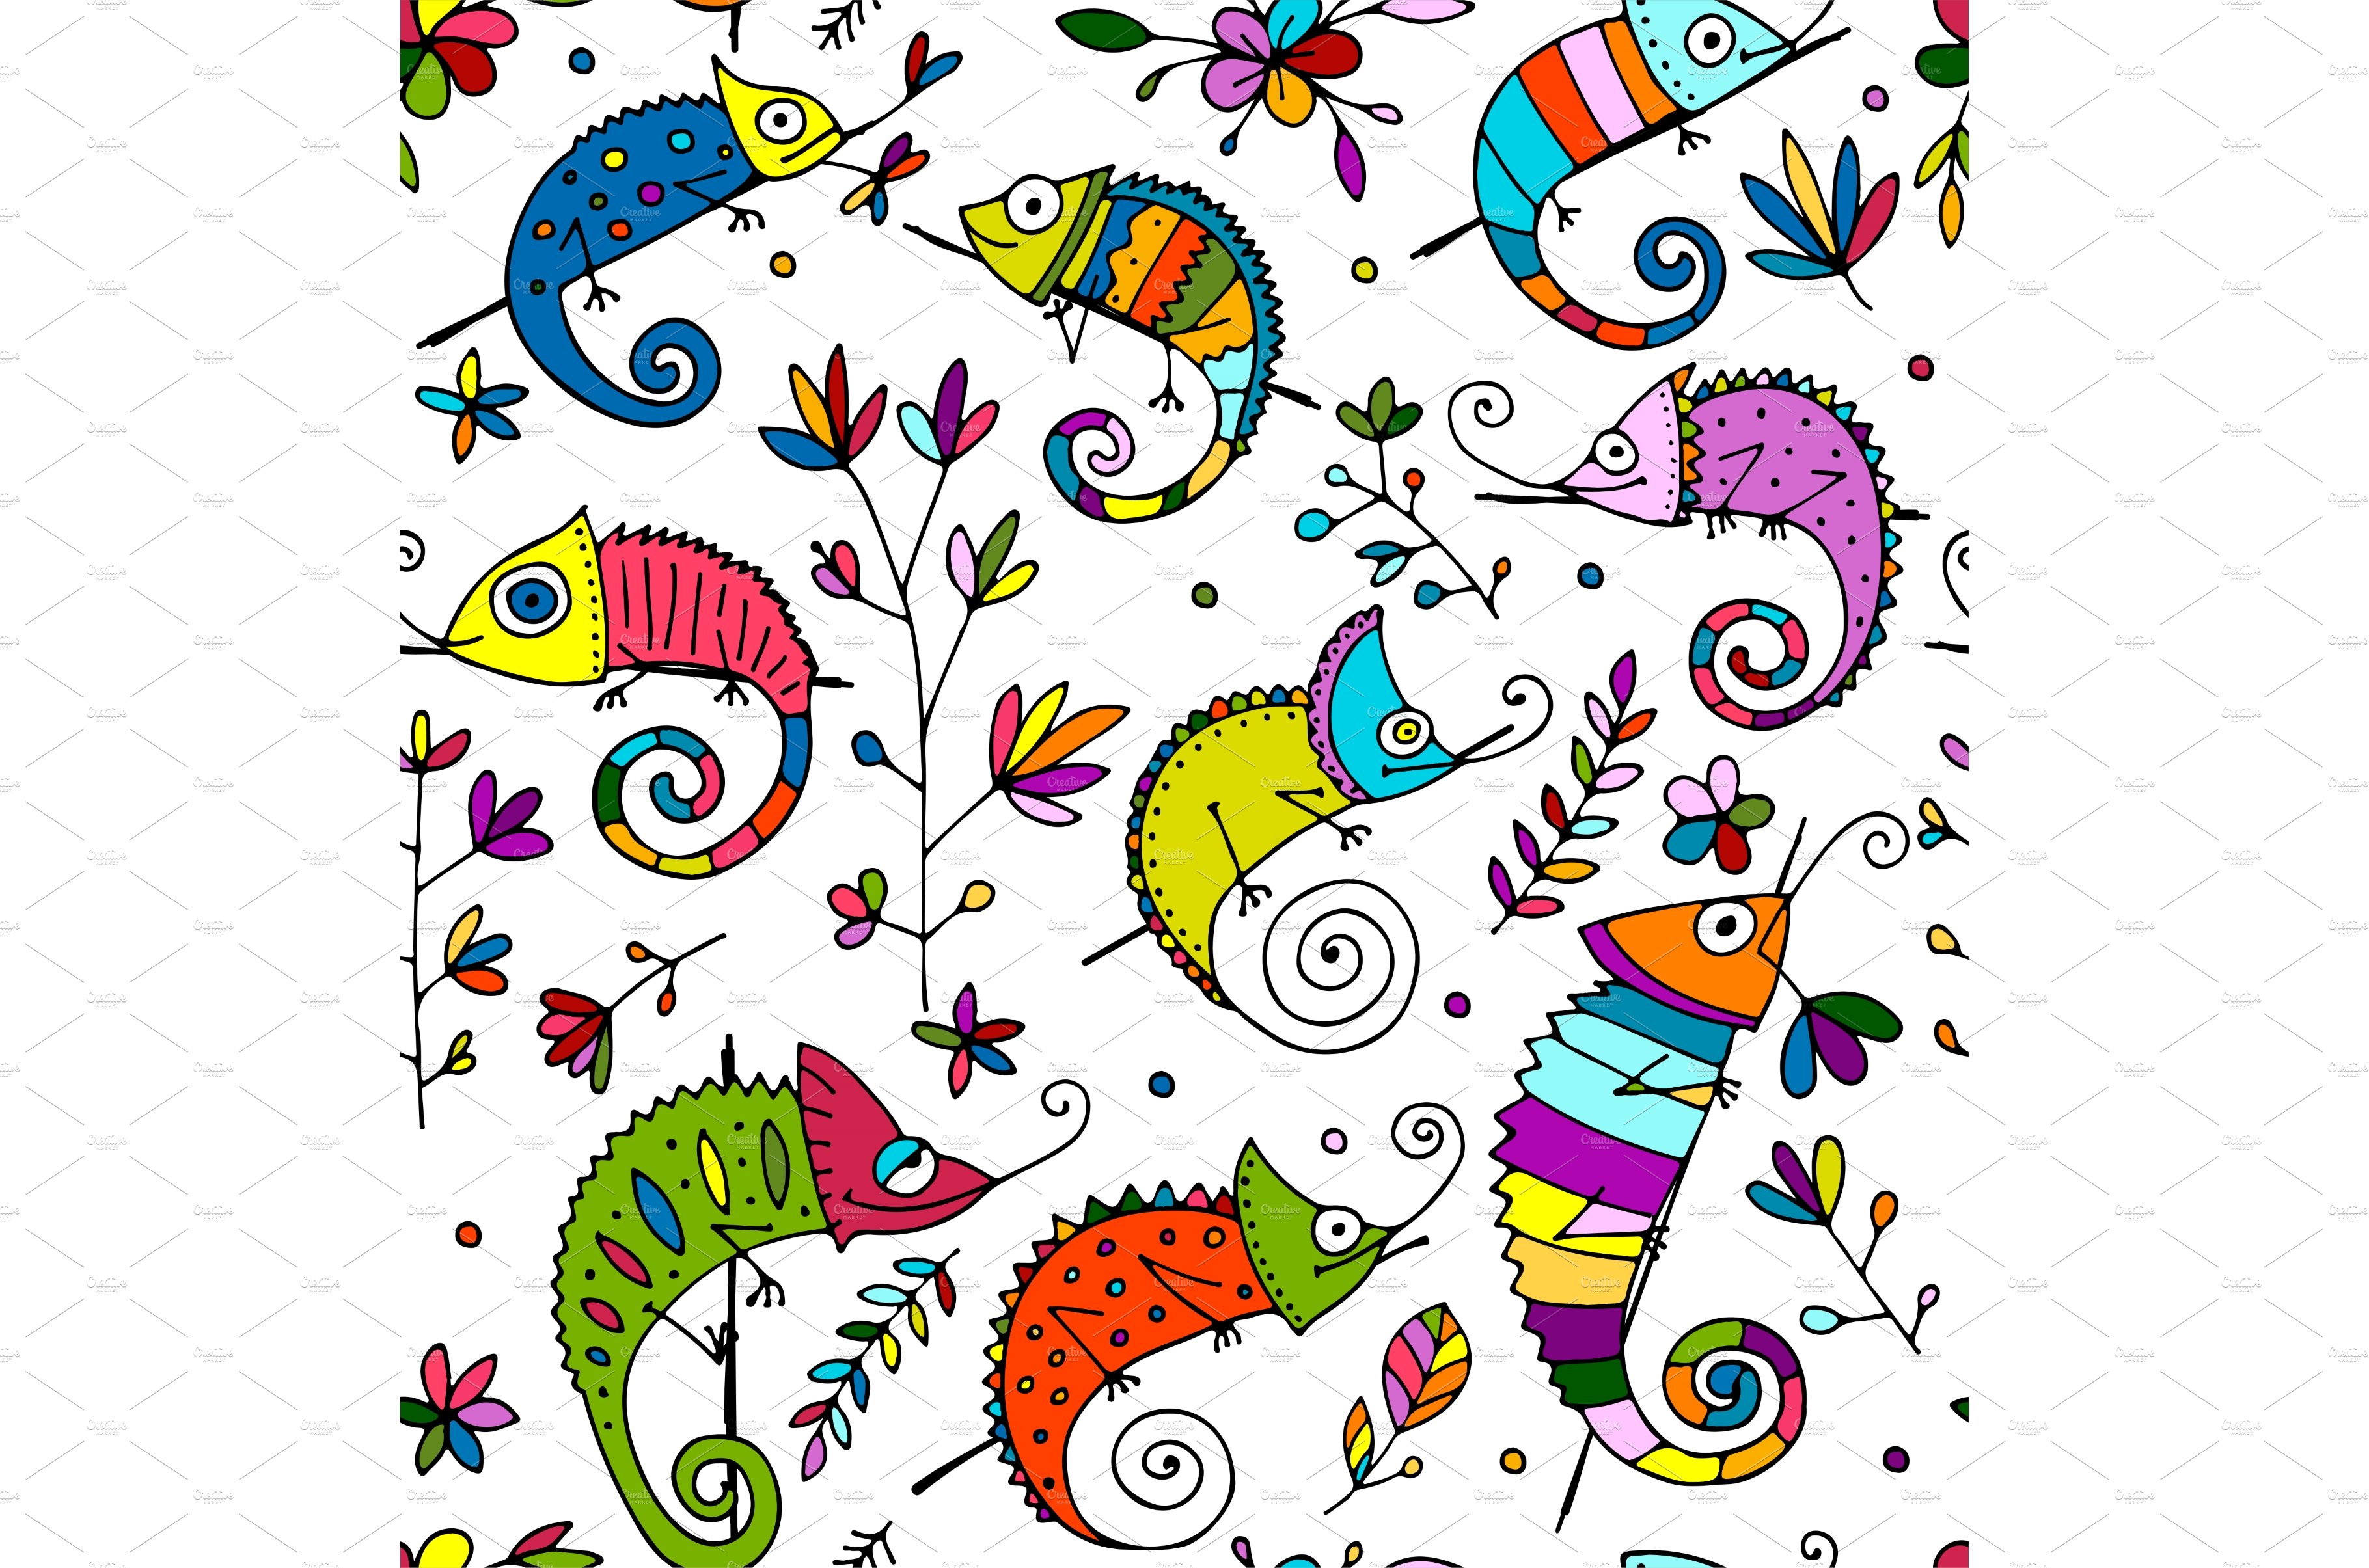 Chameleons family, seamless pattern cover image.